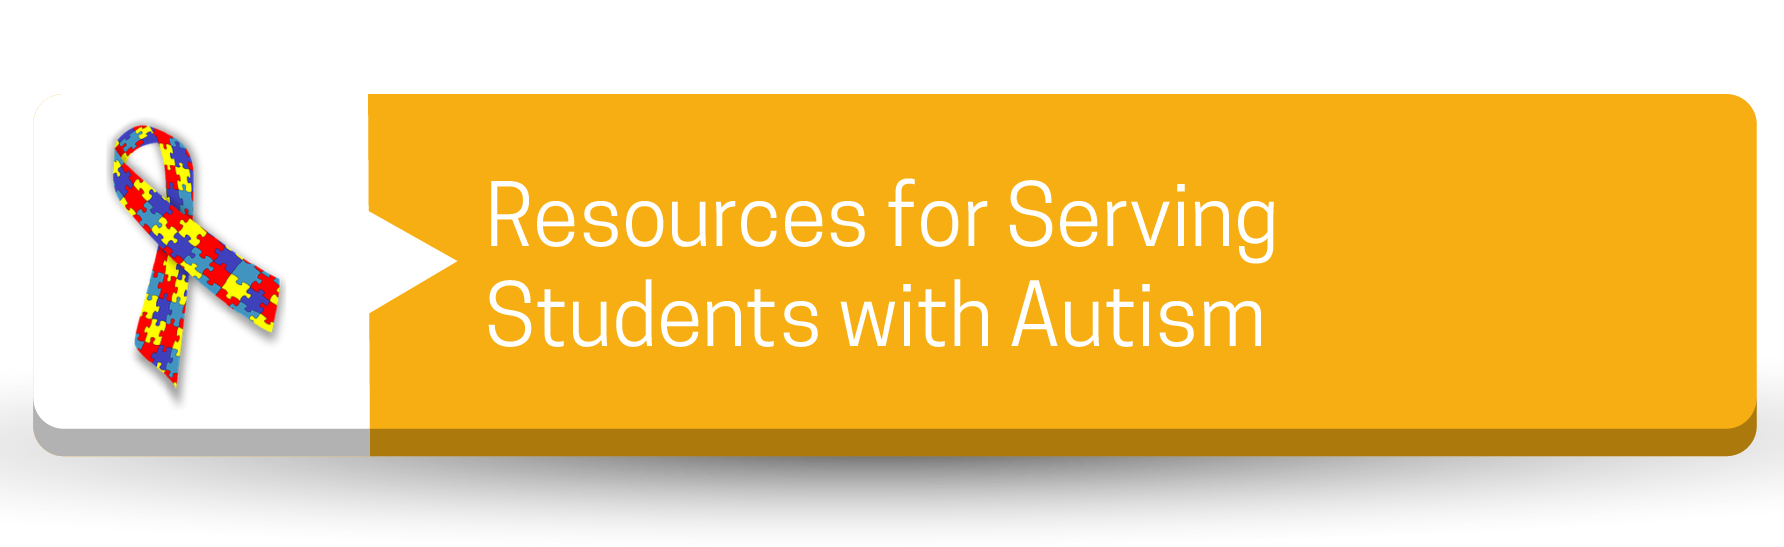 Recursos para atender a estudiantes con autismo Button